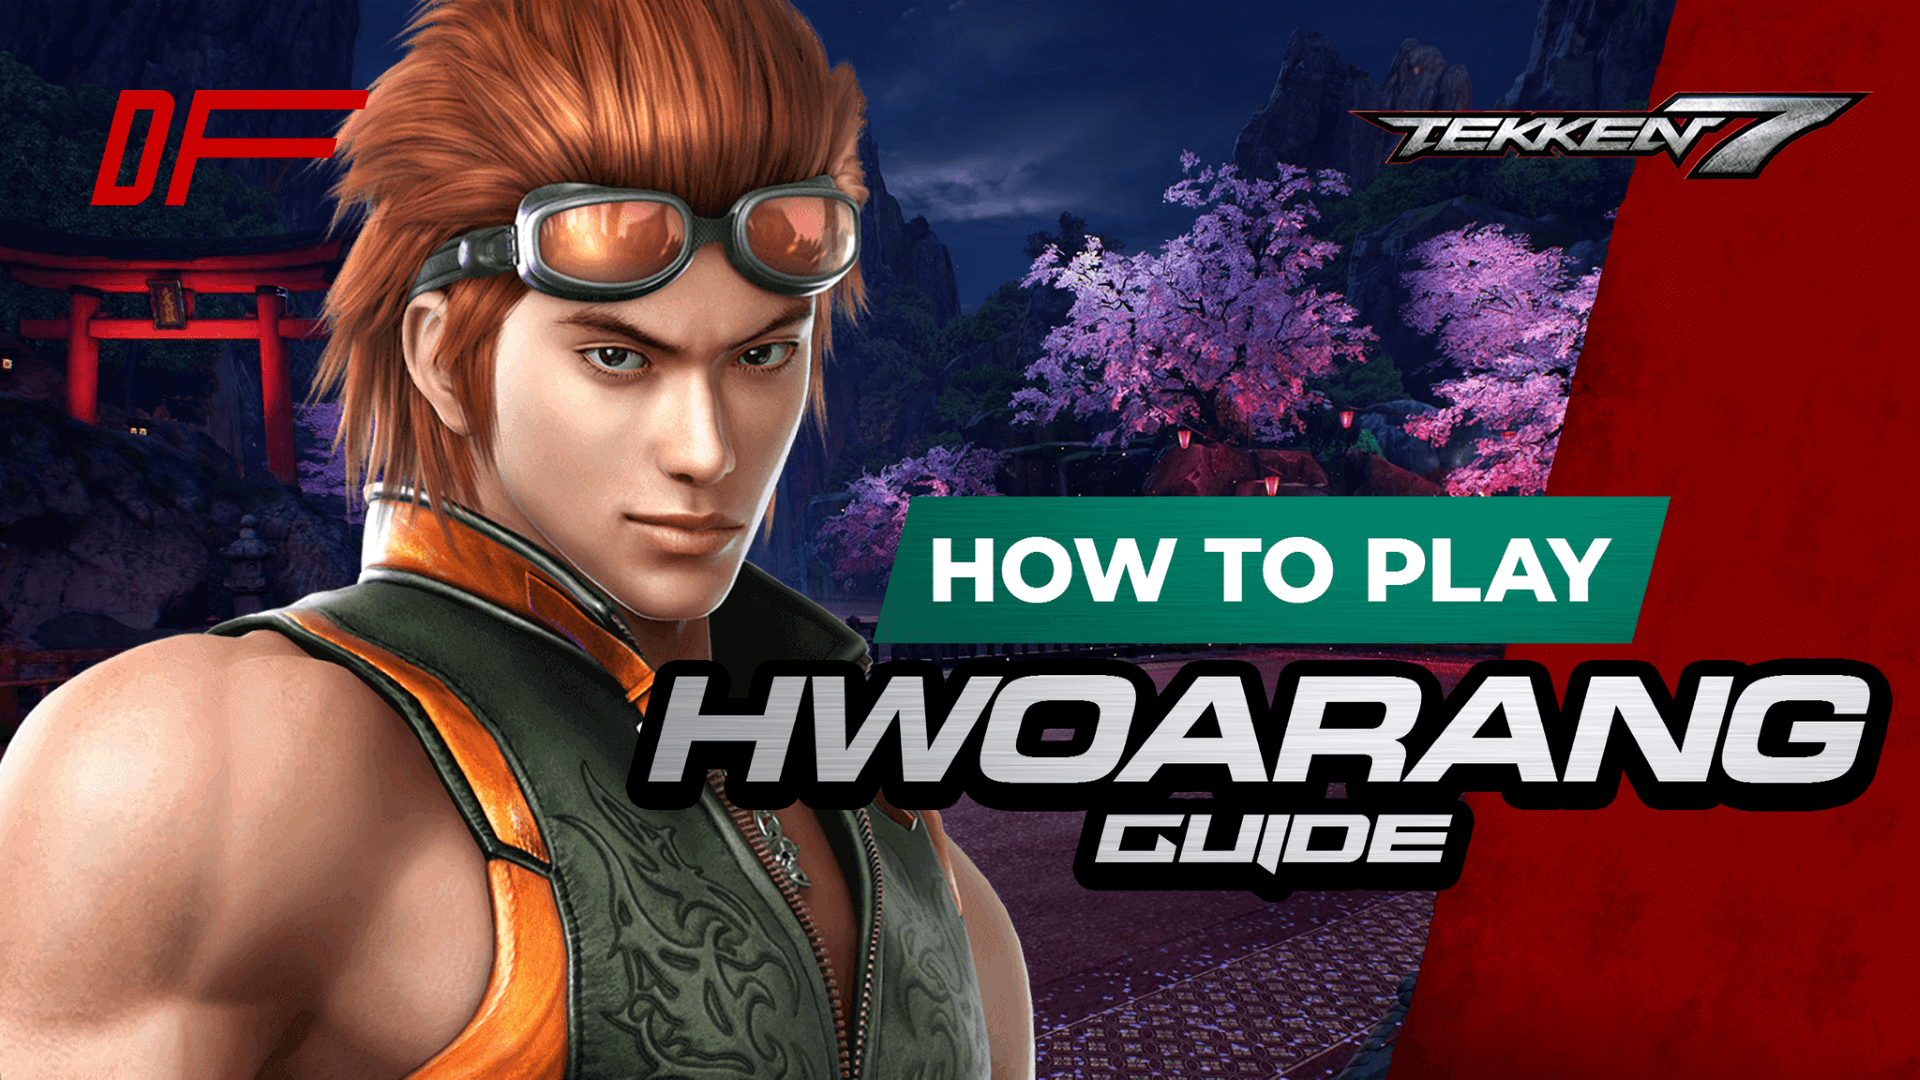 Tekken 7 Hwoarang Guide Featuring K-Wiss